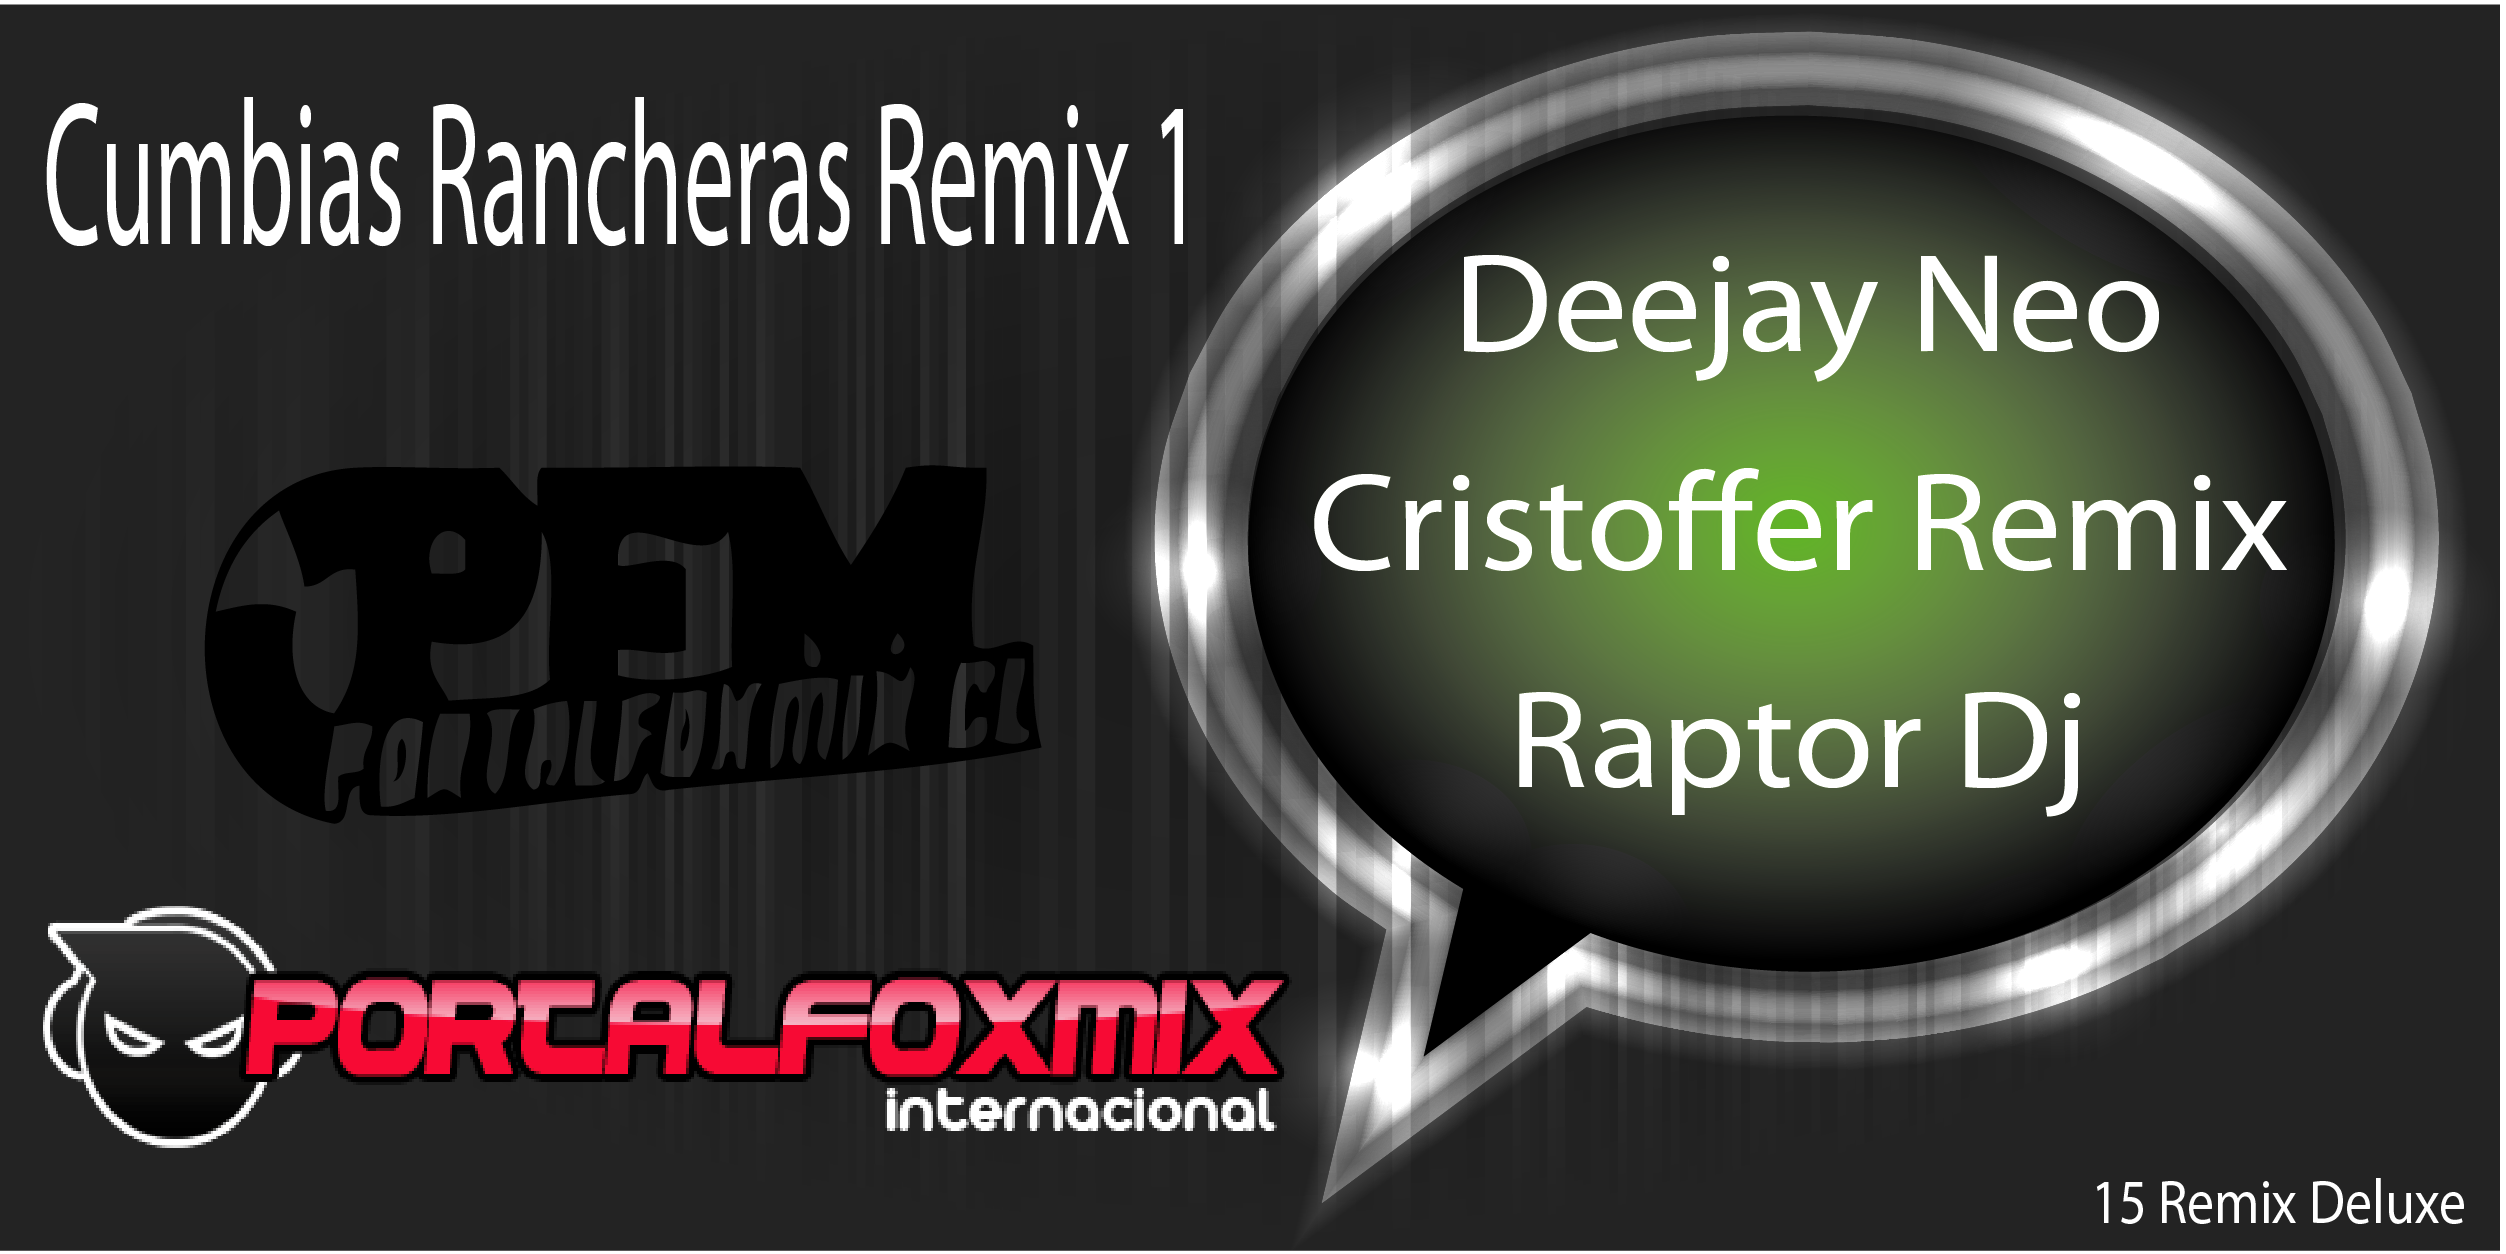 5019: Pack Remixes Cumbias Rancheras (Deejay Neo – Cristoffer Remix – Raptor Dj) 15 Remix Deluxe